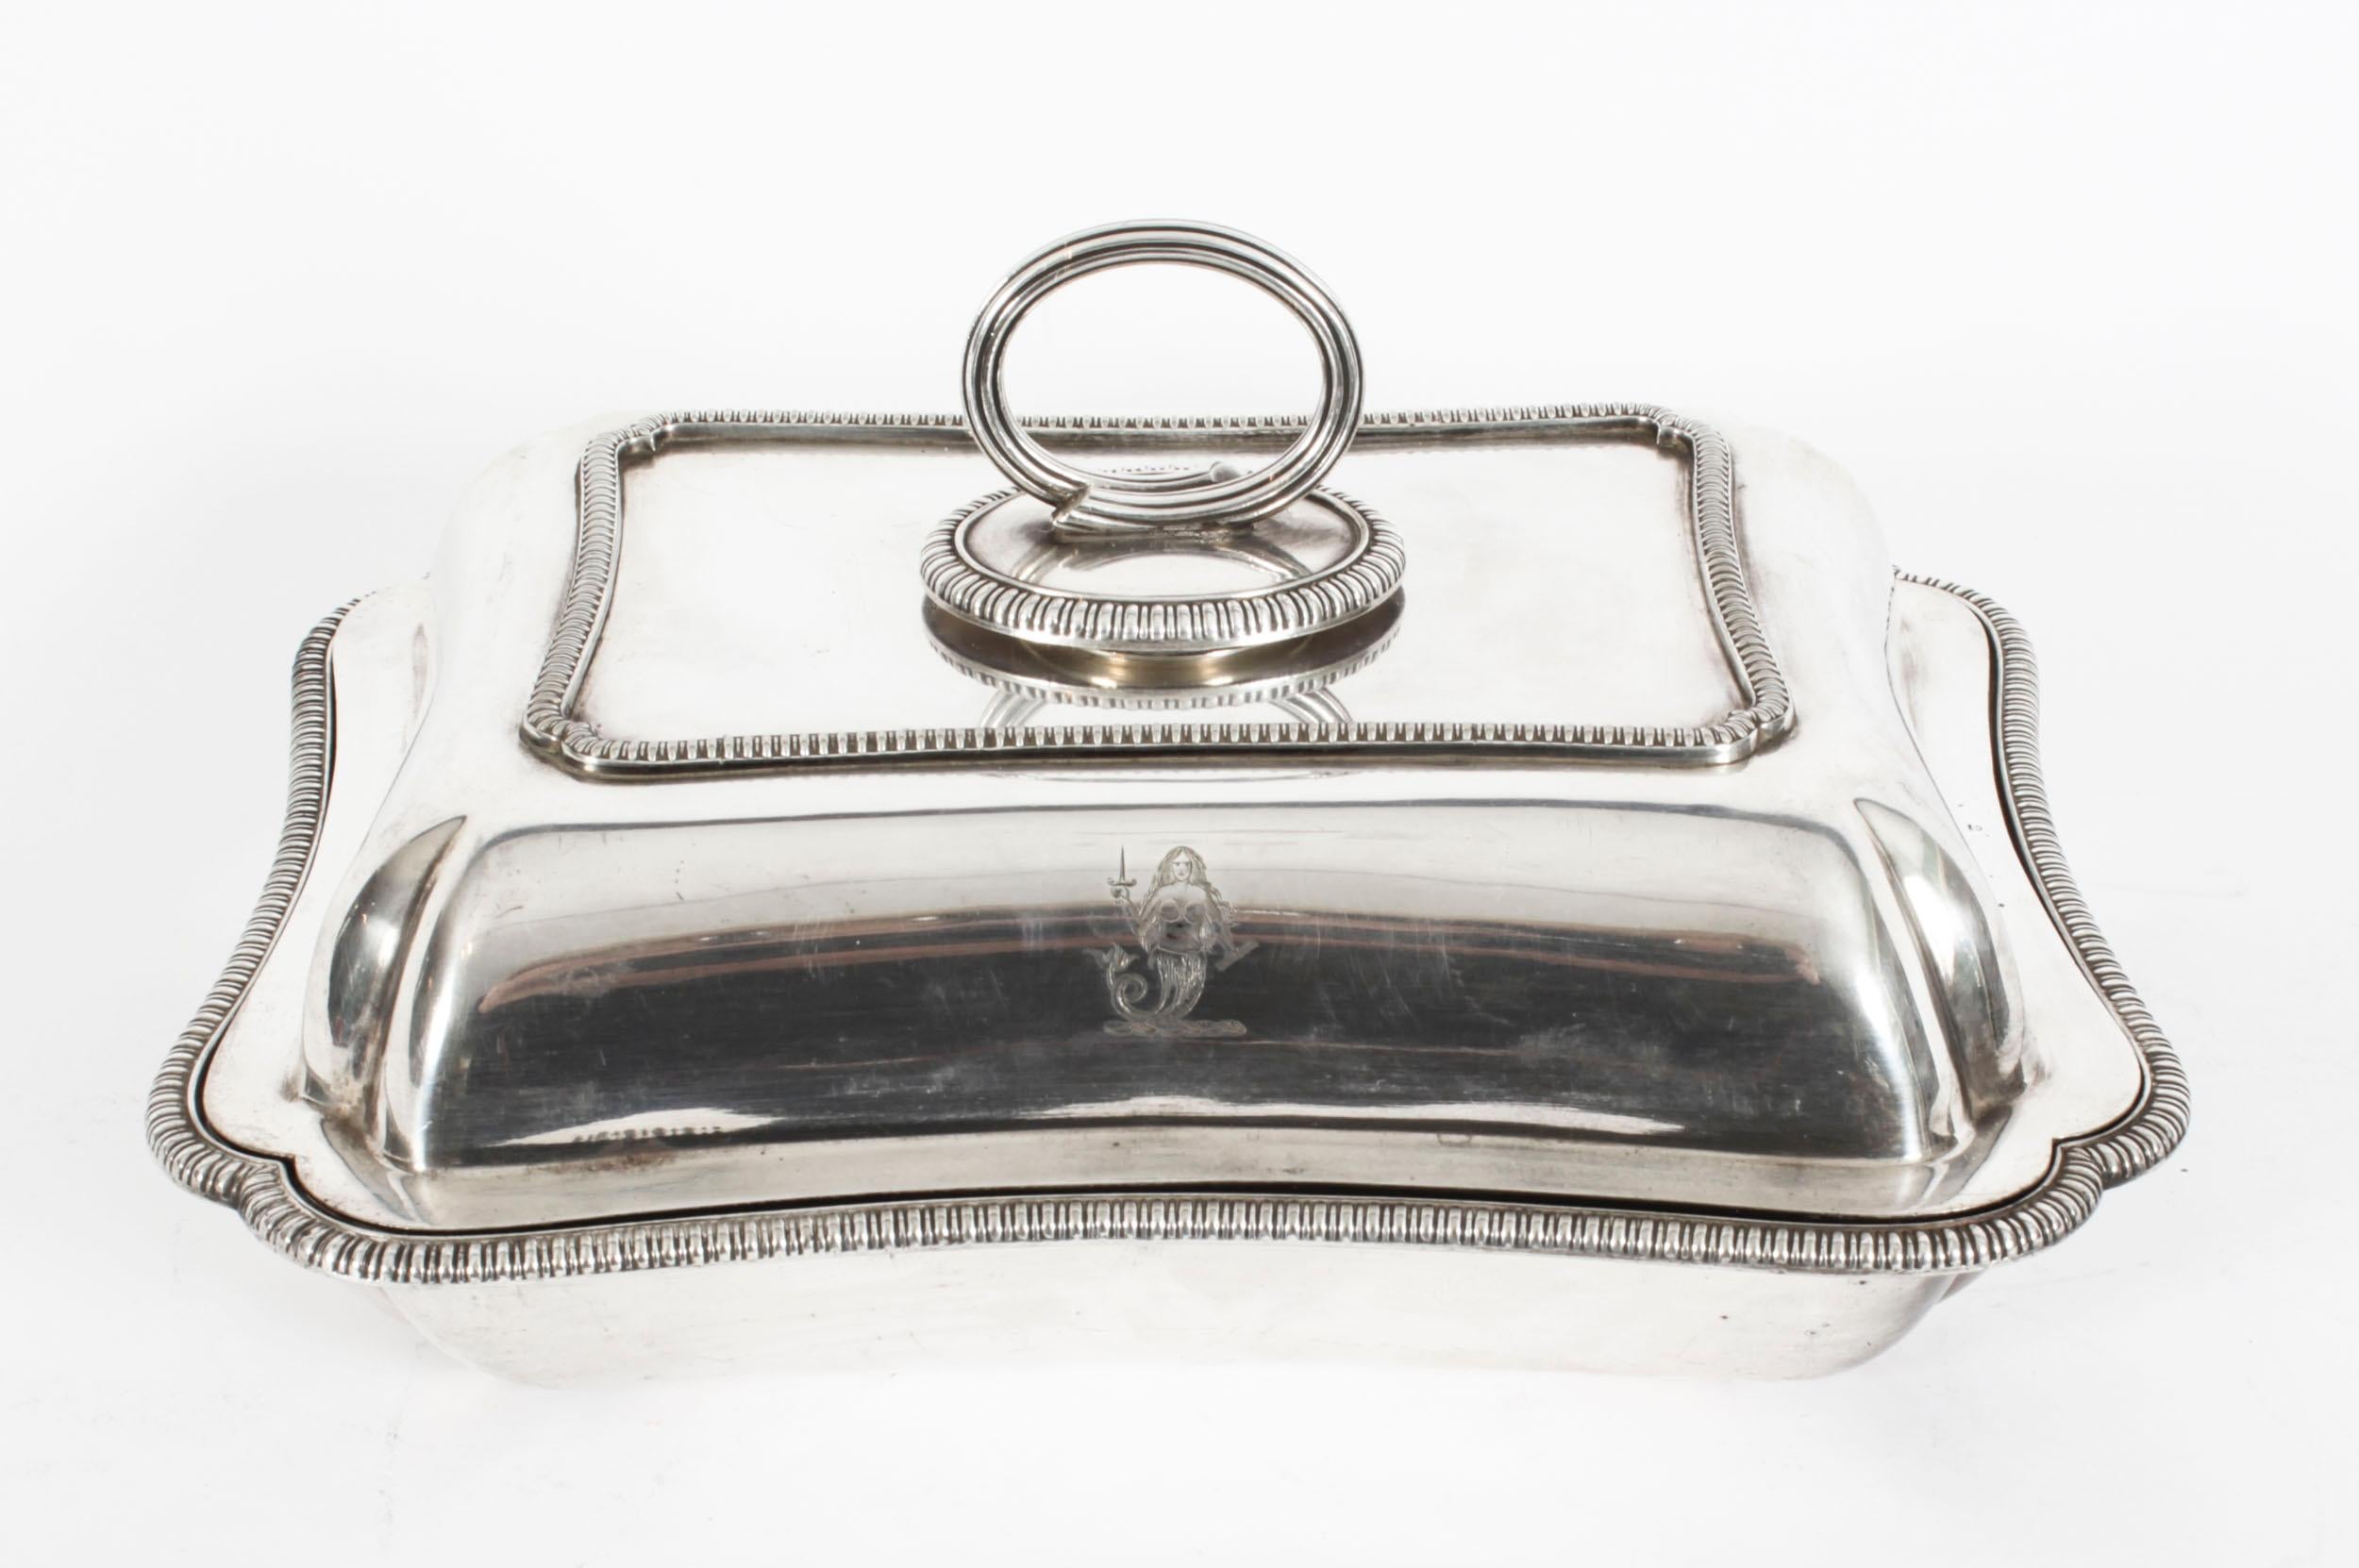 Dies ist ein exquisites und seltenes antikes Paar englischer versilberter  Vorspeisenteller des bekannten Silberschmieds Elkington & Co, datiert 1888.
   
Die Schalen haben eine rechteckige Form mit reizvollen, passenden Gadrooned Rändern auf dem